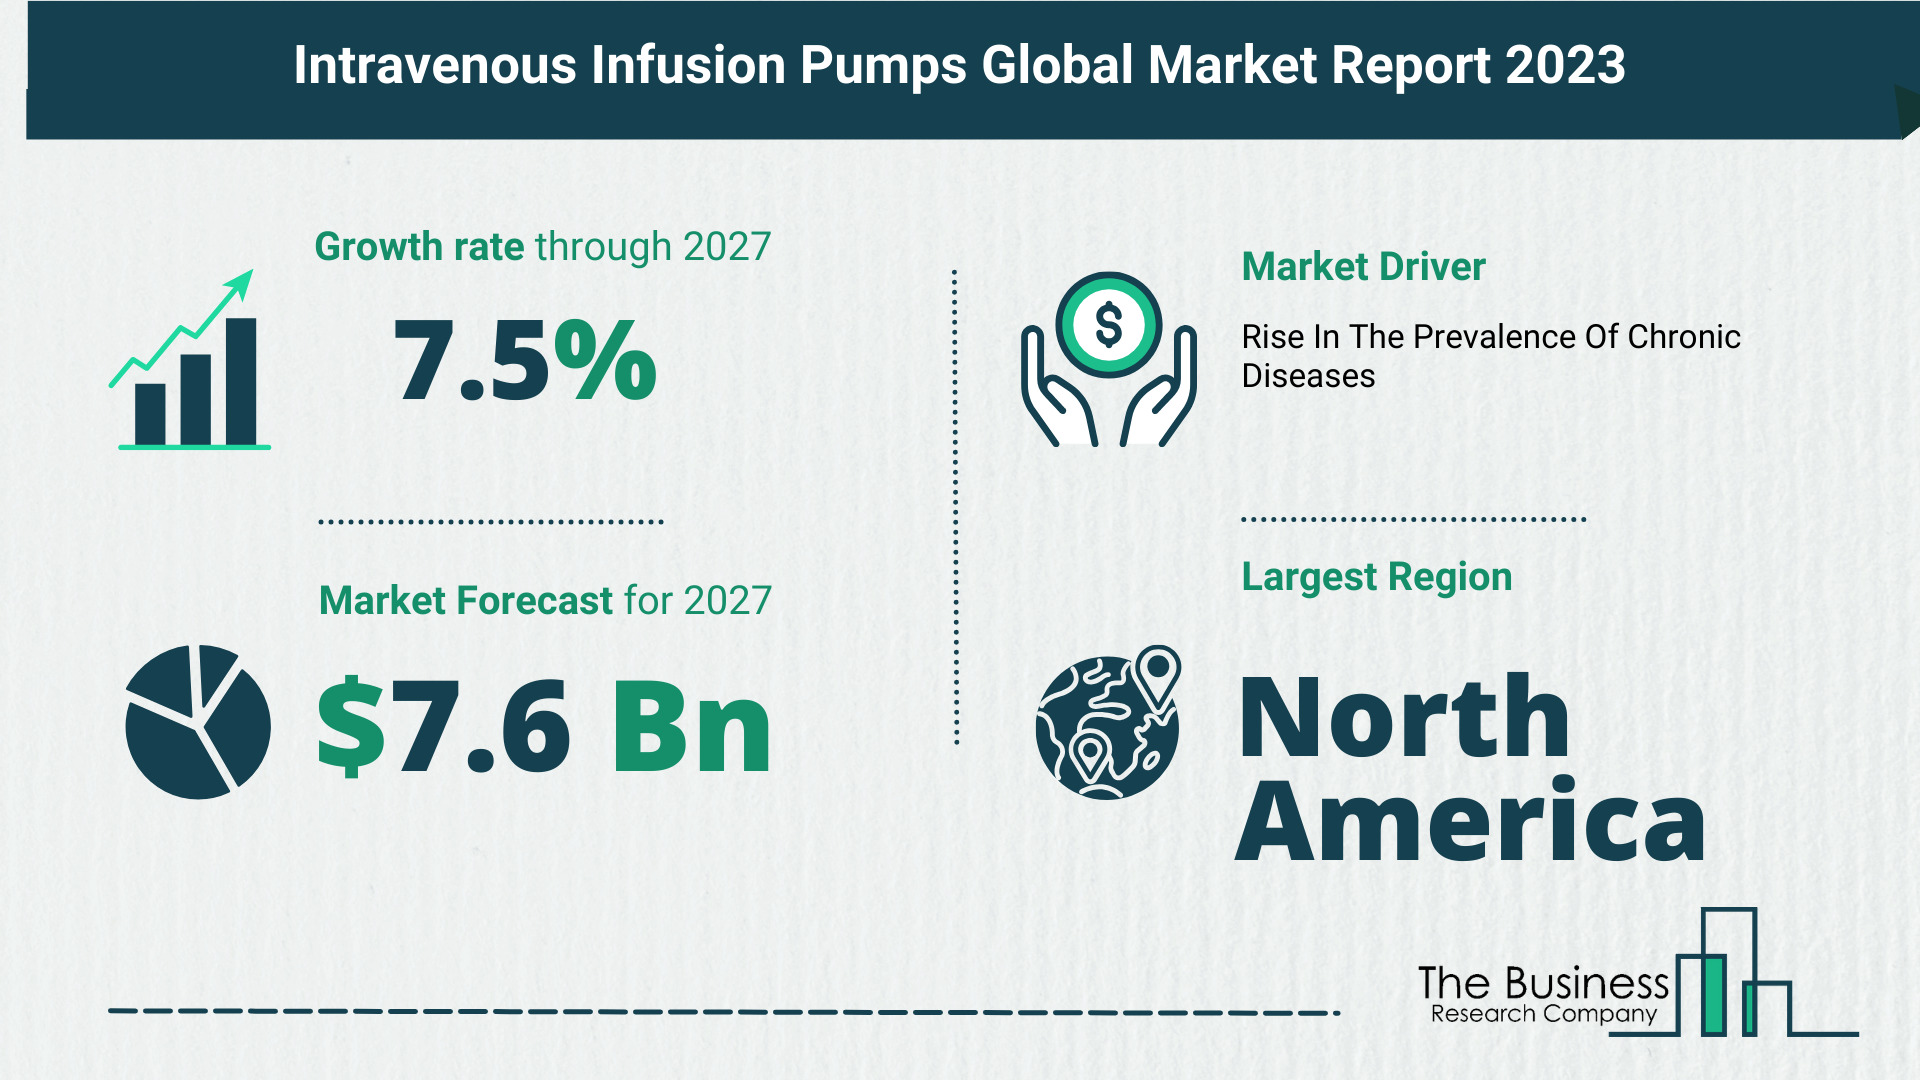 Global Intravenous Infusion Pumps Market